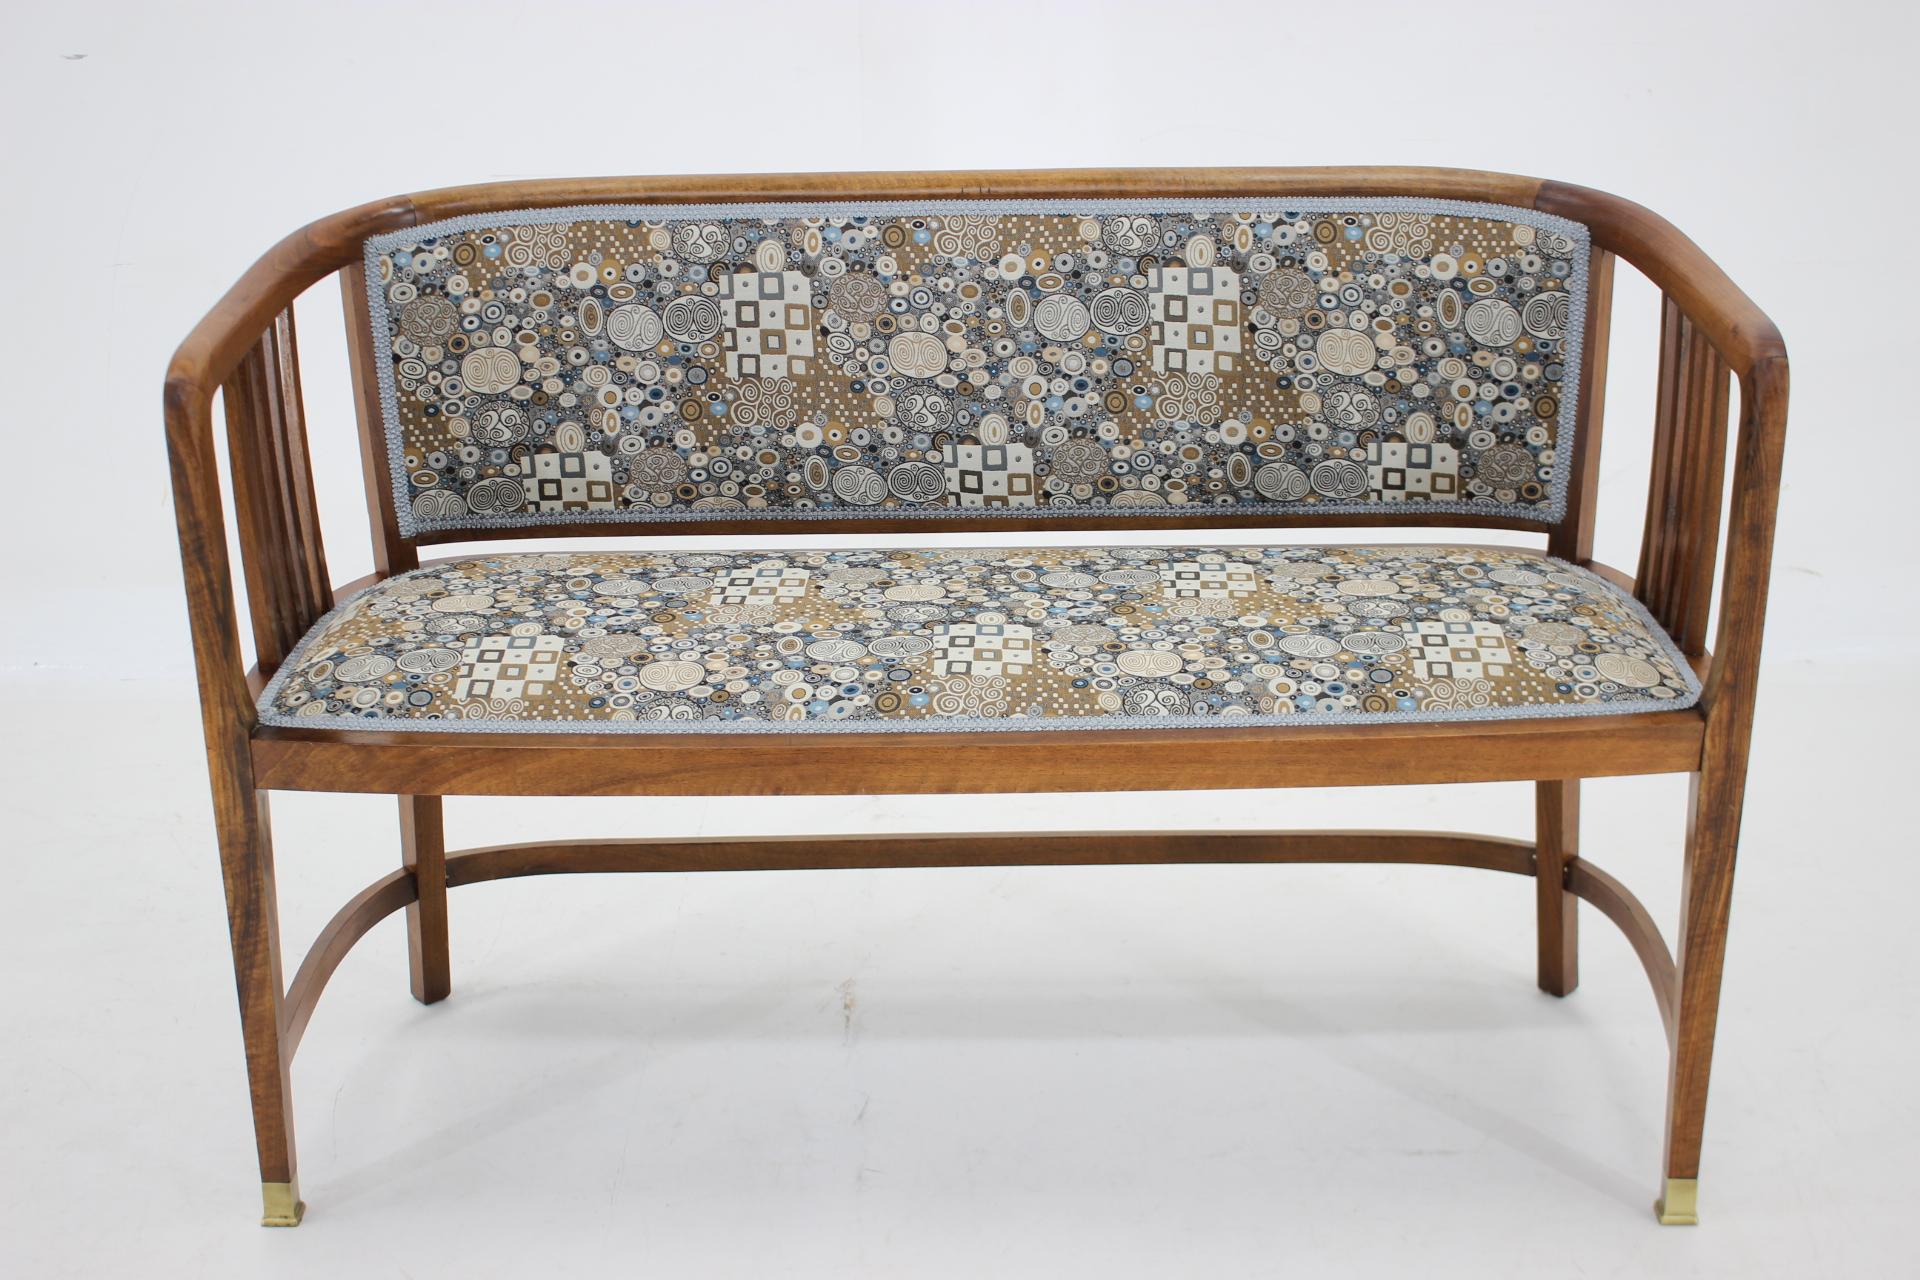  - sorgfältig überholt -
-  Professionell neu gepolstert mit einem von Gustav Klimt entworfenen Qualitätsstoff 
- Höhe des Sitzes 45 cm